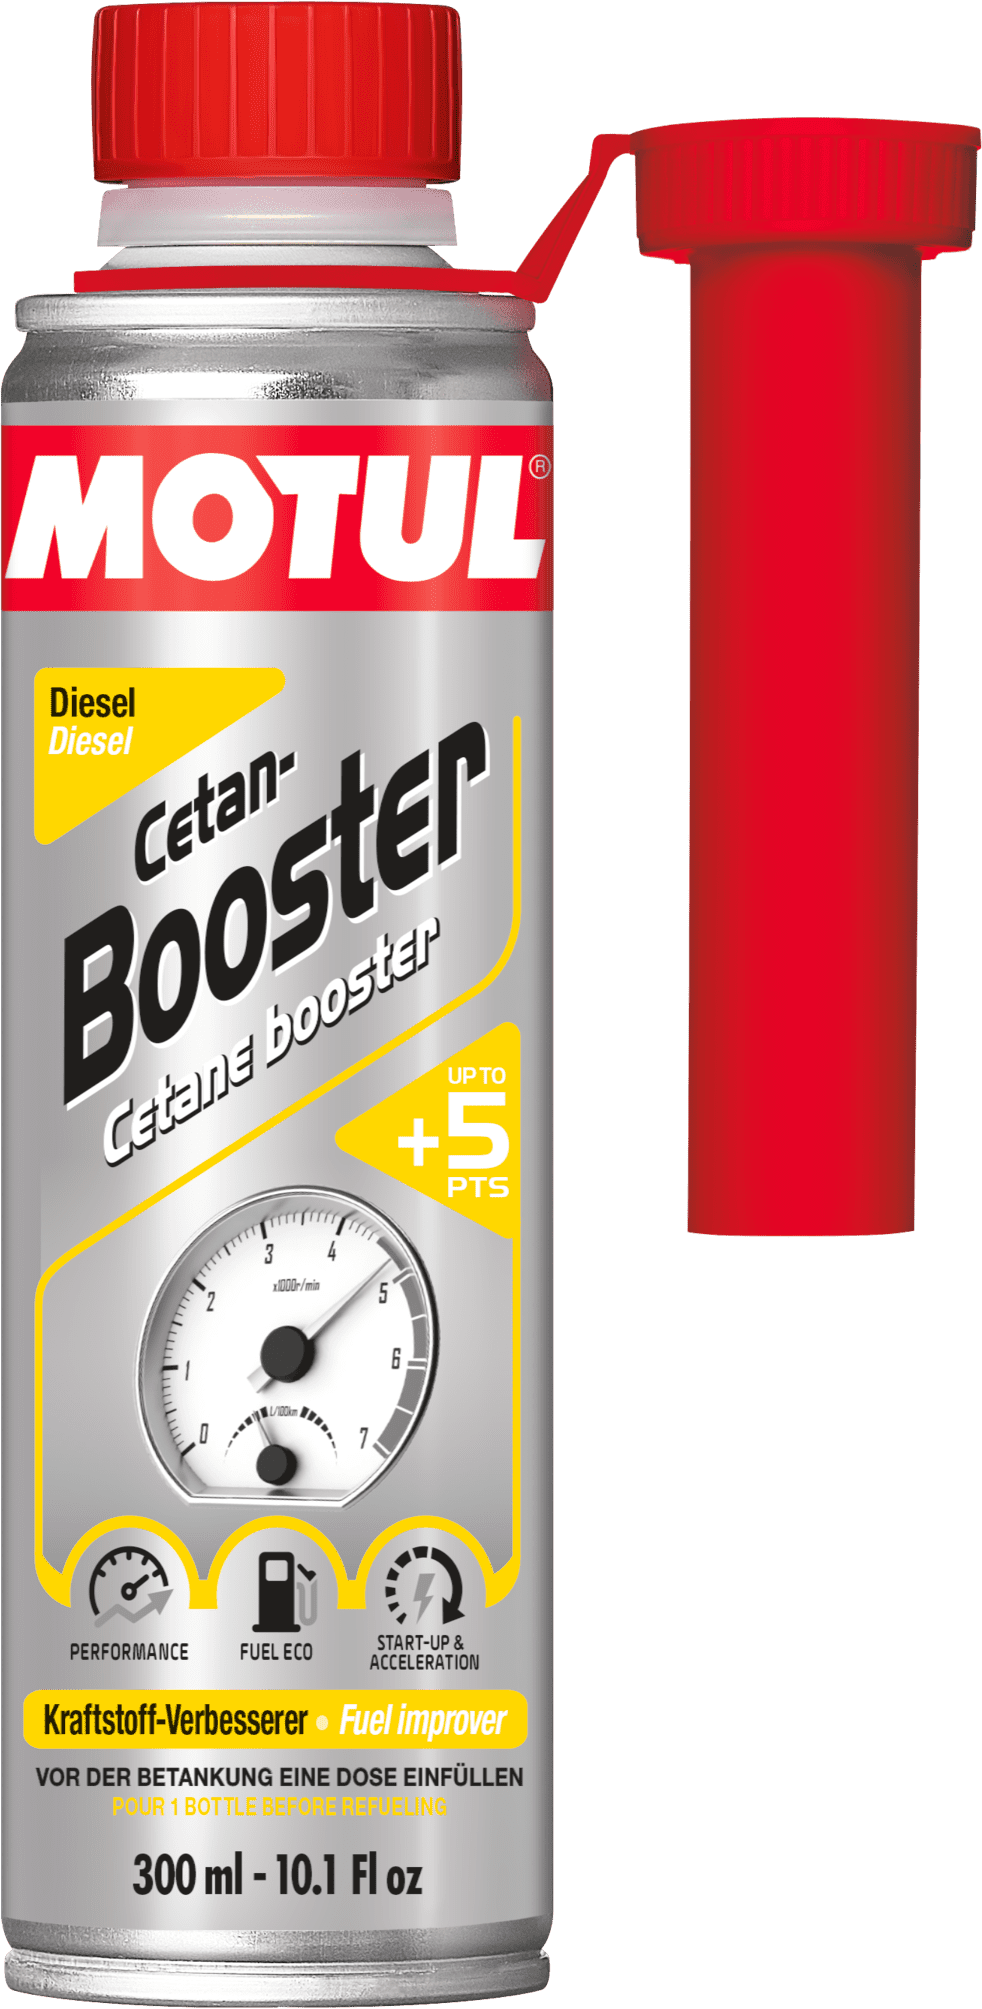 Motul Cetane Booster Diesel, 300 ml - produits - Club Motul